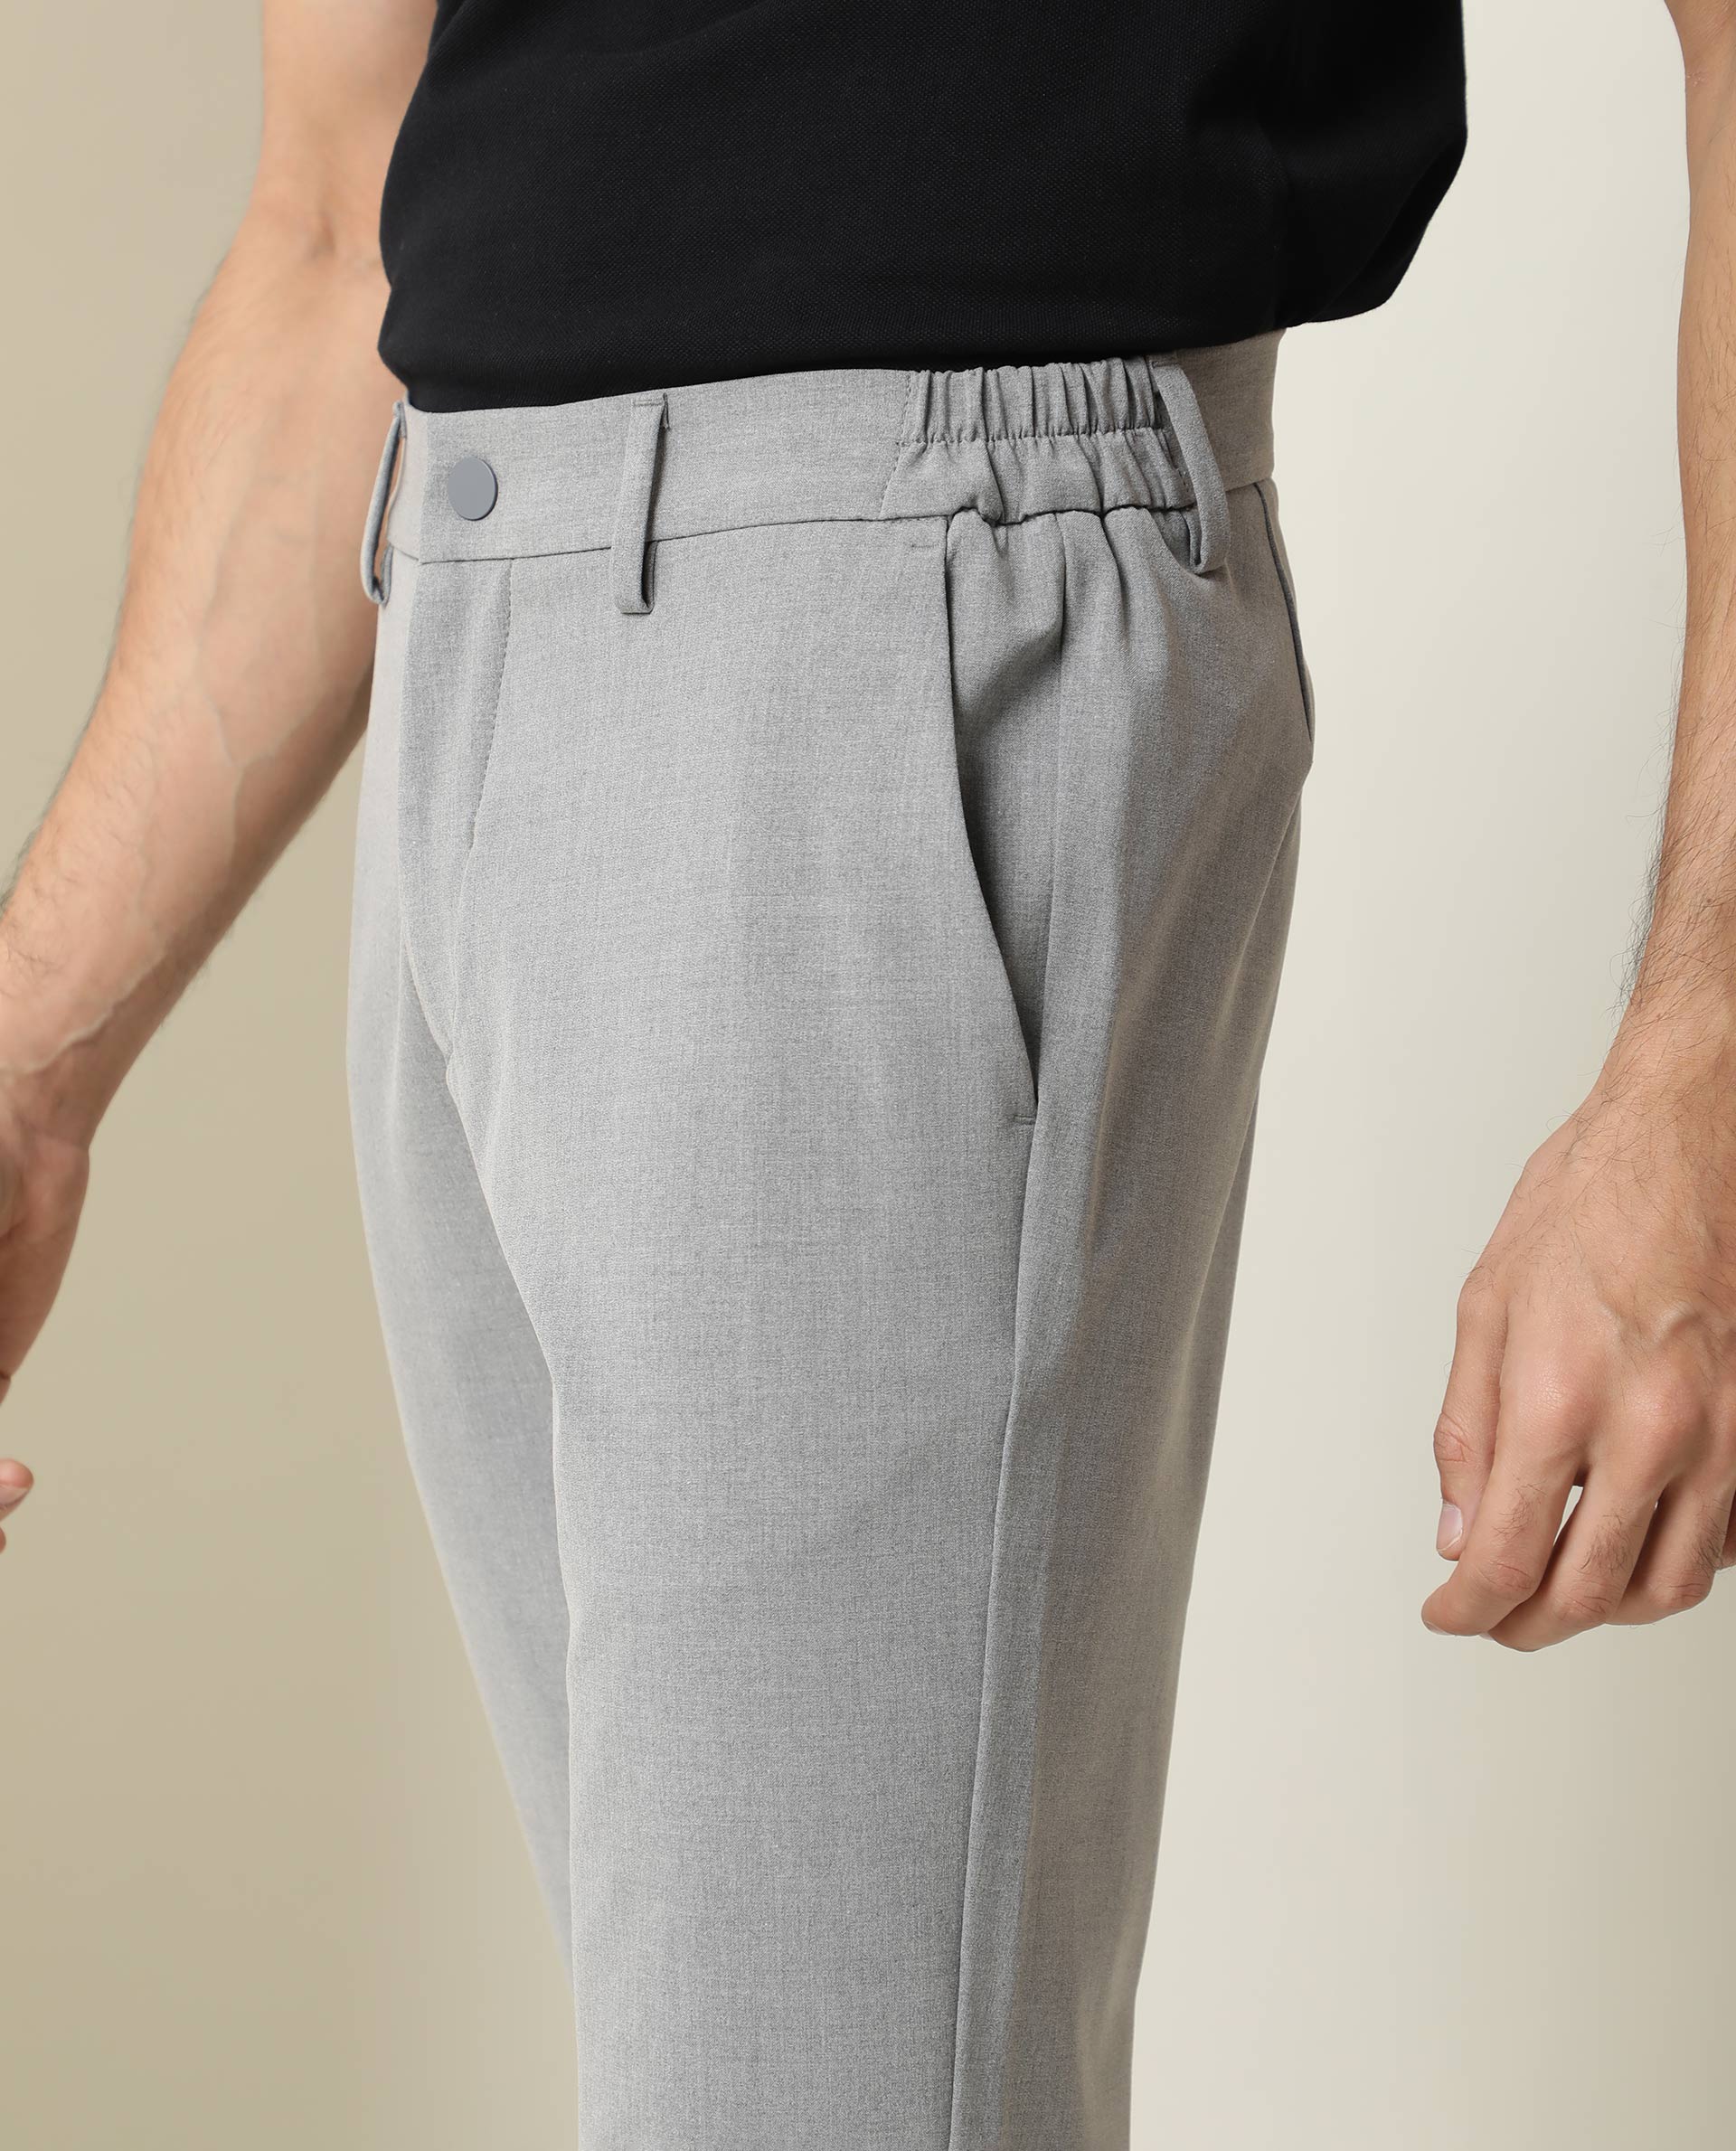 Buy Arrow Bi-Stretch Solid Formal Trousers - NNNOW.com